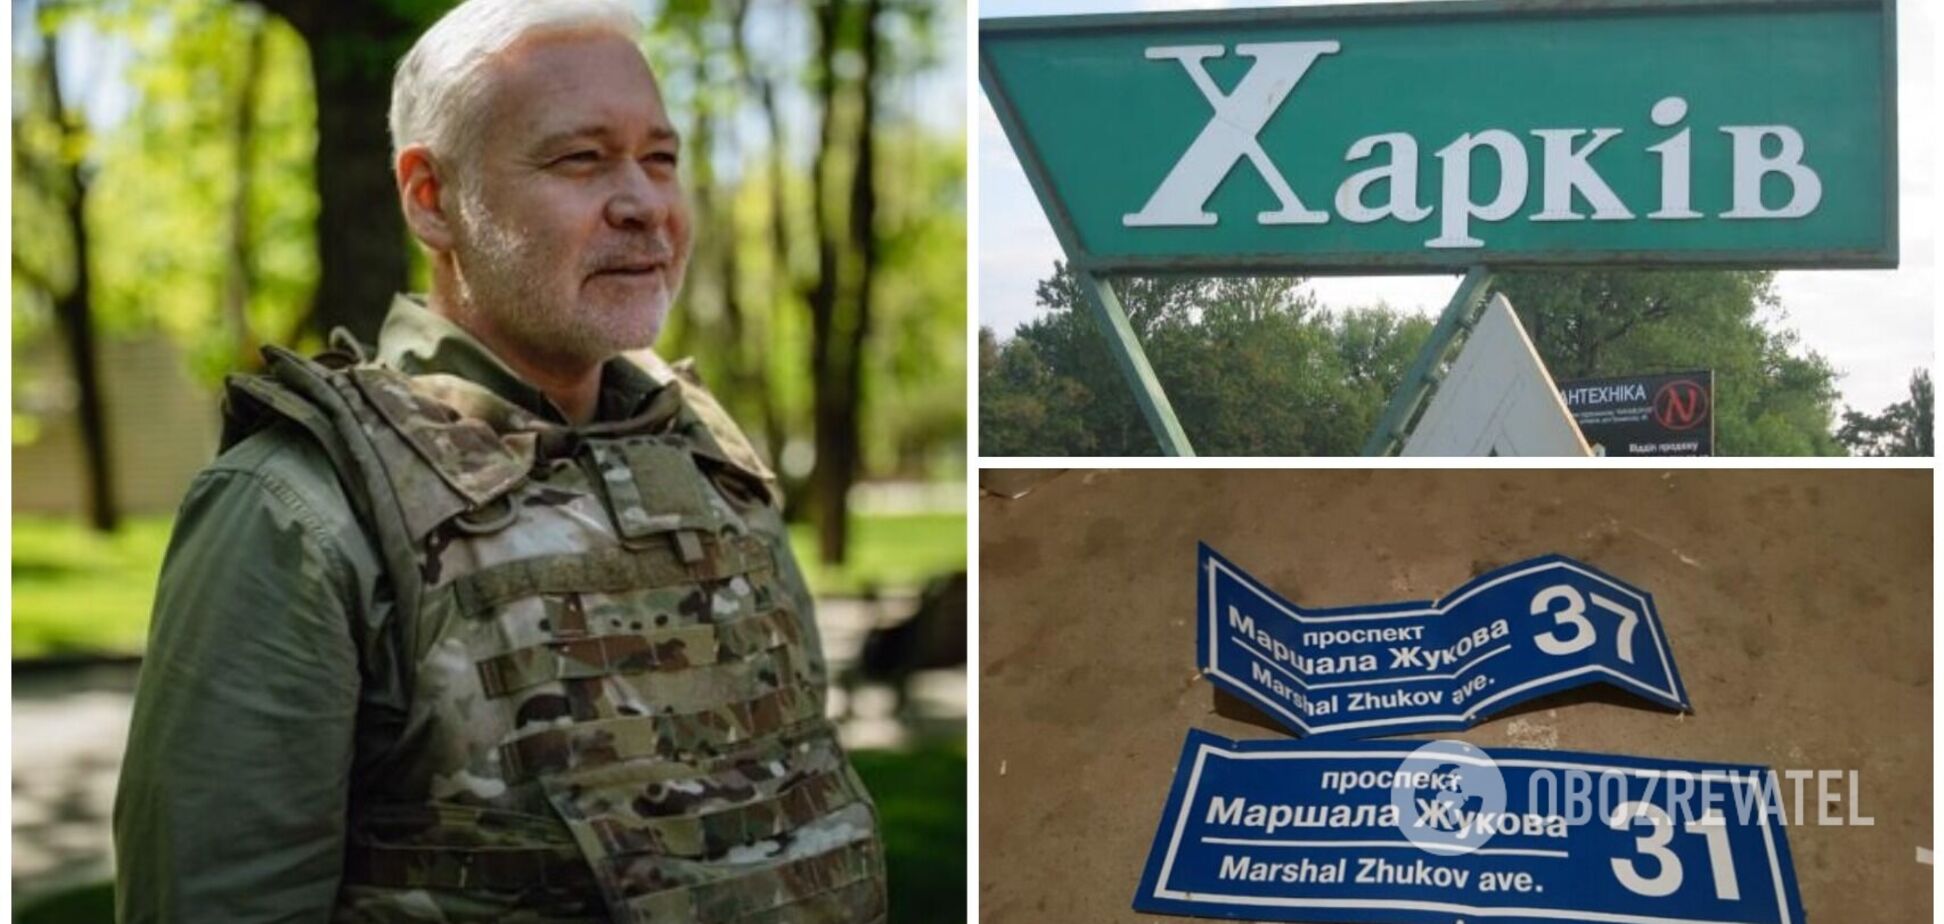 Терехов заявил, что проспект Жукова в Харькове будет переименован